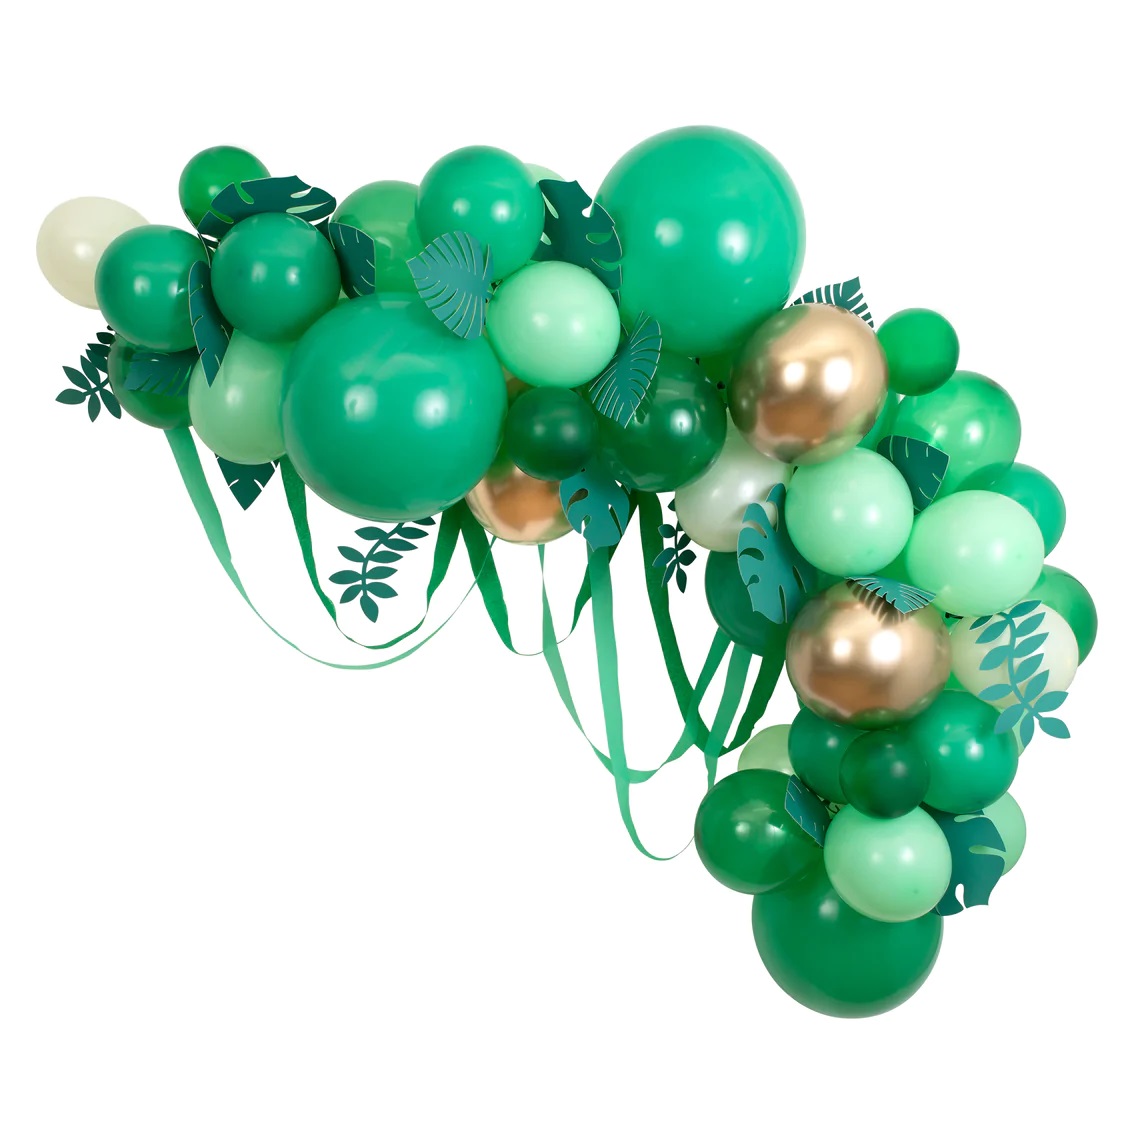 Leafy Green Balloon Arch 13229